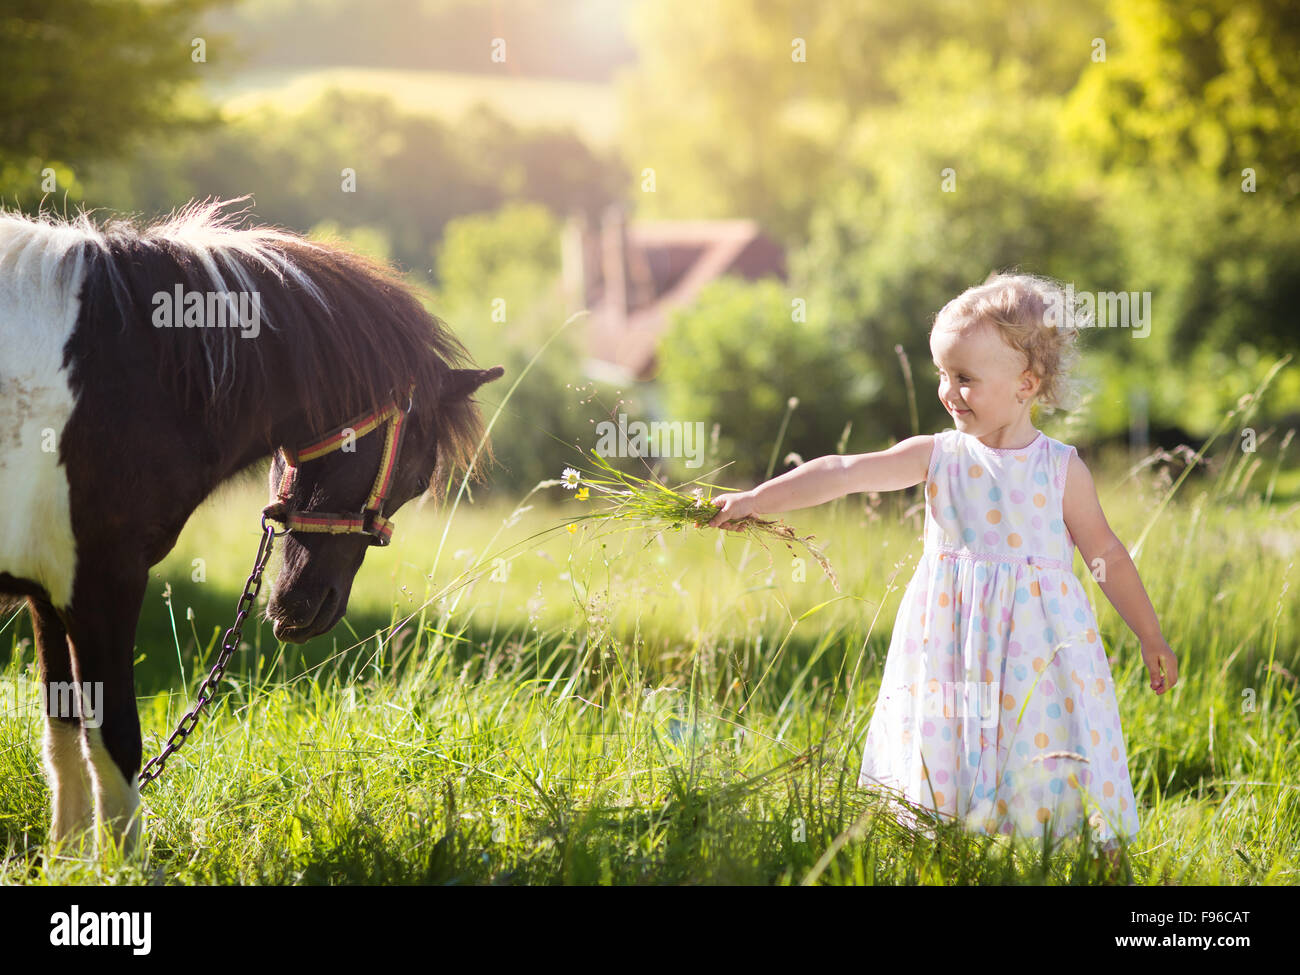 Portrait de jeune fille tlittle s'amusant à l'extérieur, de l'alimentation campagne pony Banque D'Images